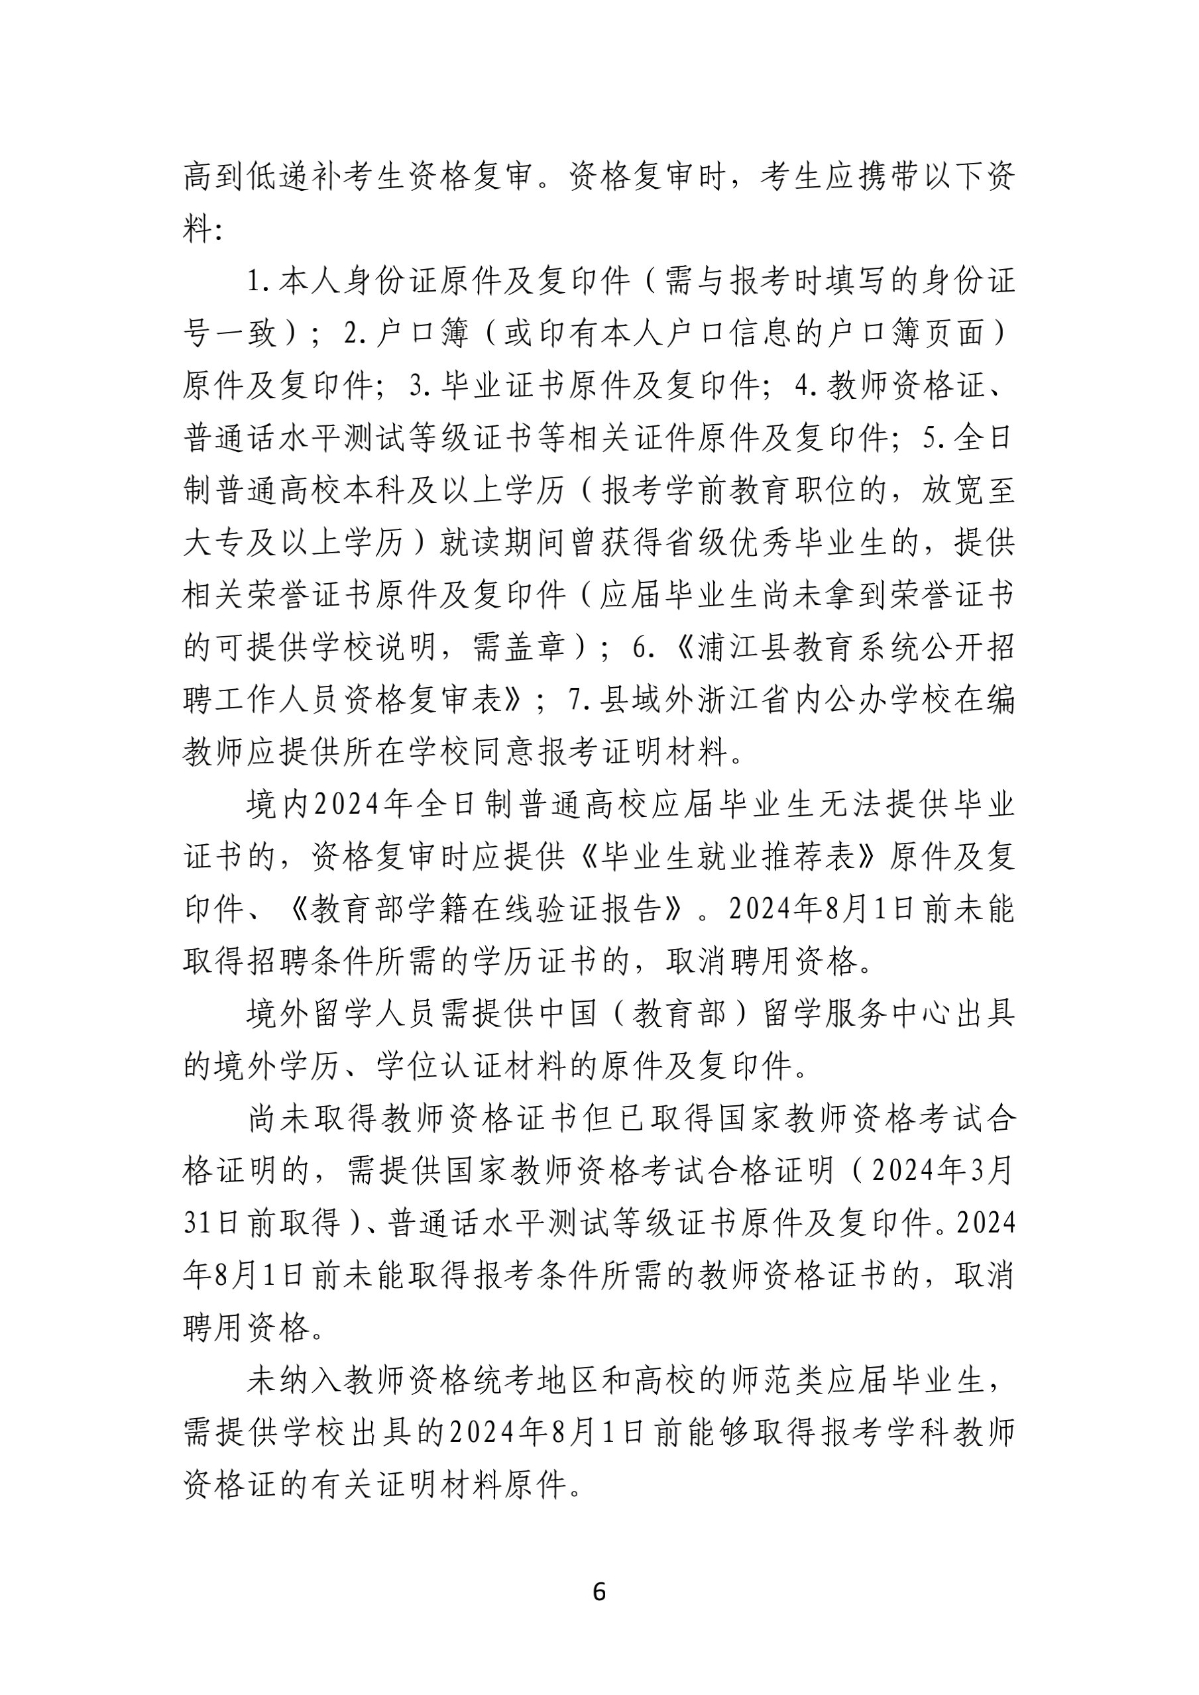 2024年浦江县教育系统公开招聘工作人员公告(1)_6.jpg